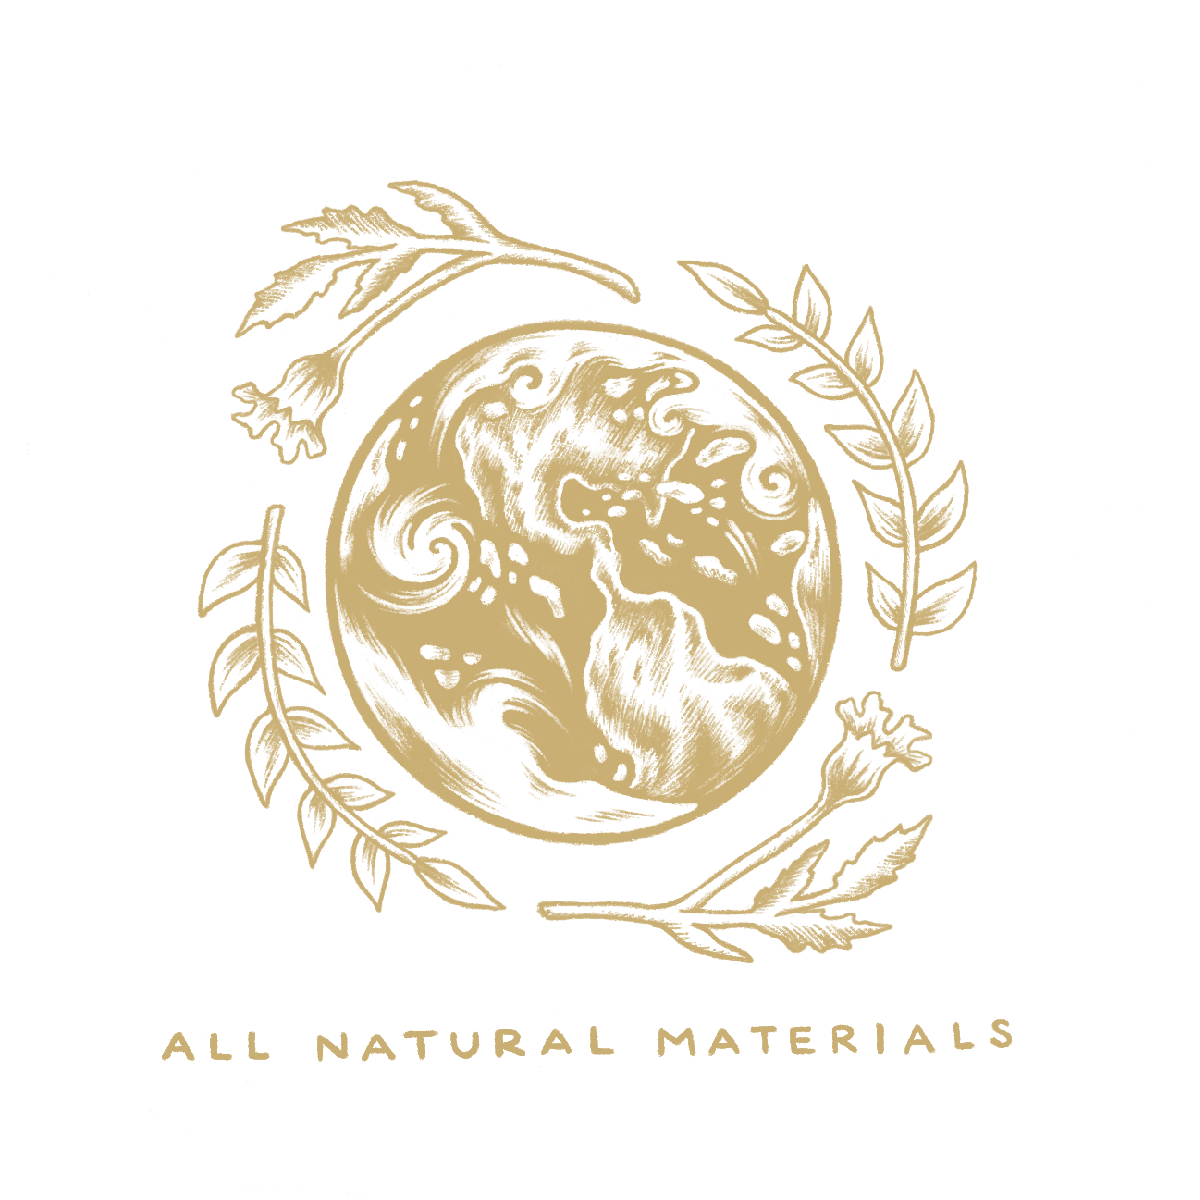 NaturalMaterials gold.png